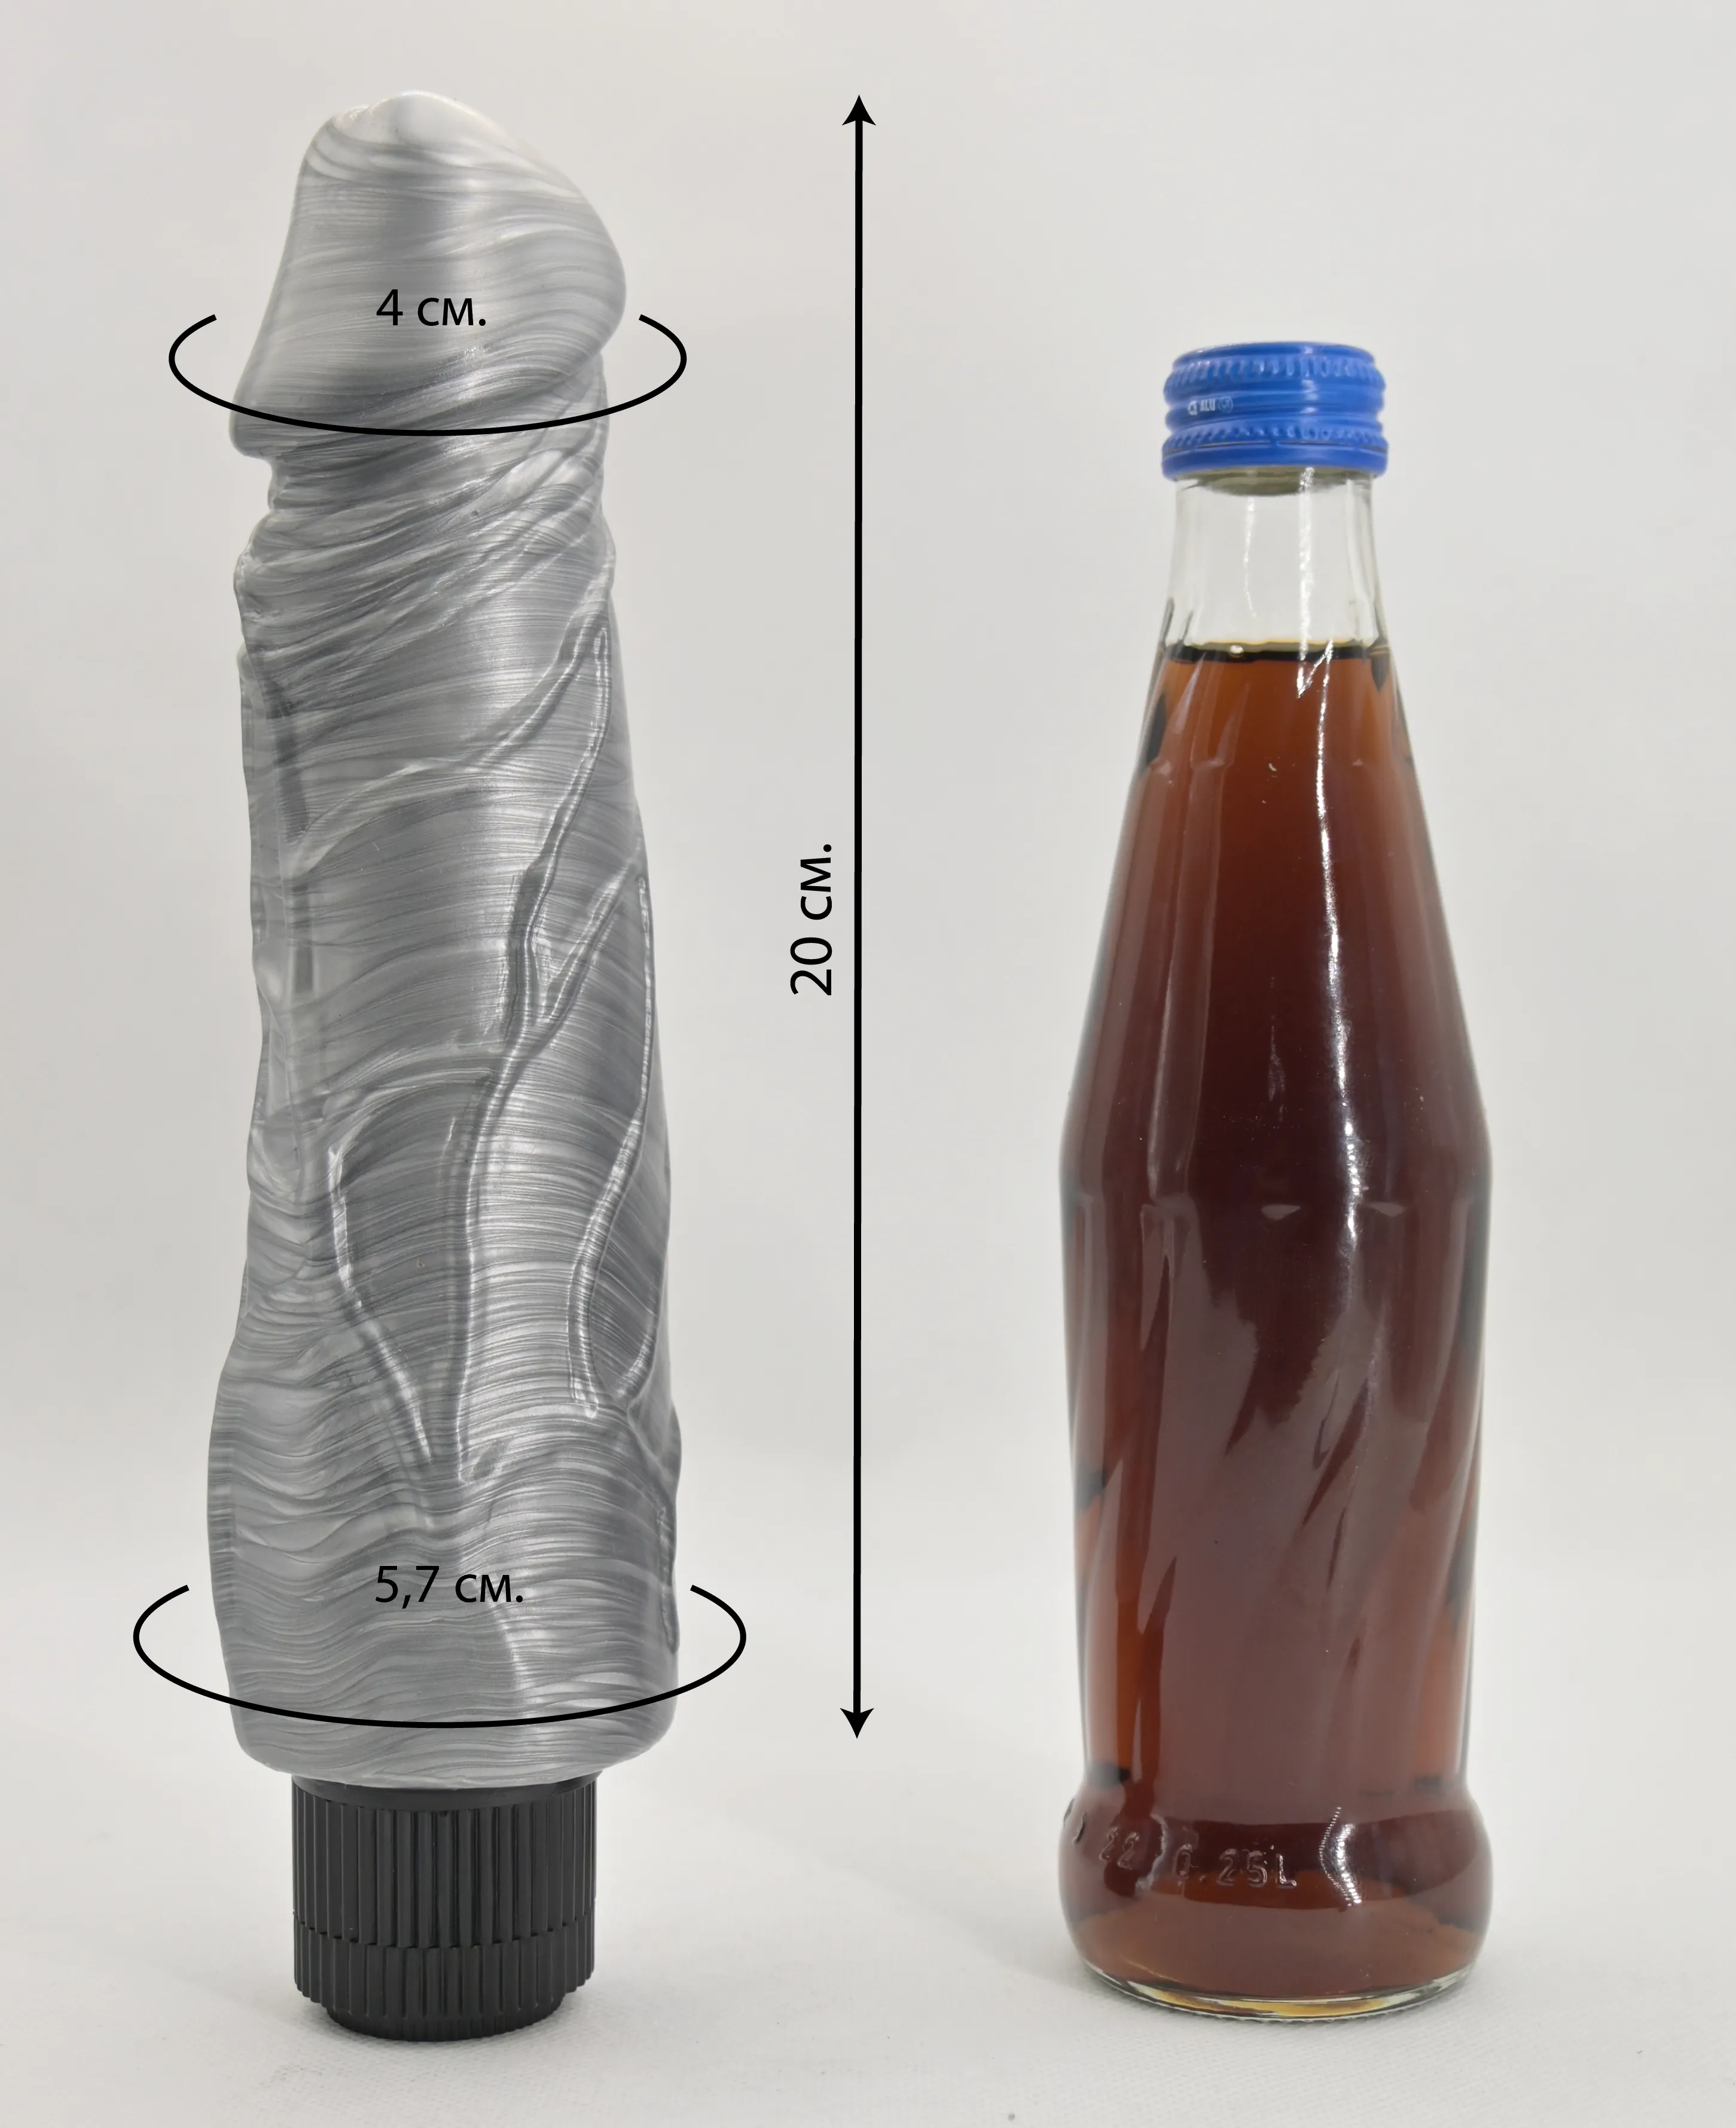 Размеры и сравнение вибратора Pat McCock серебристый с бутылкой пепси